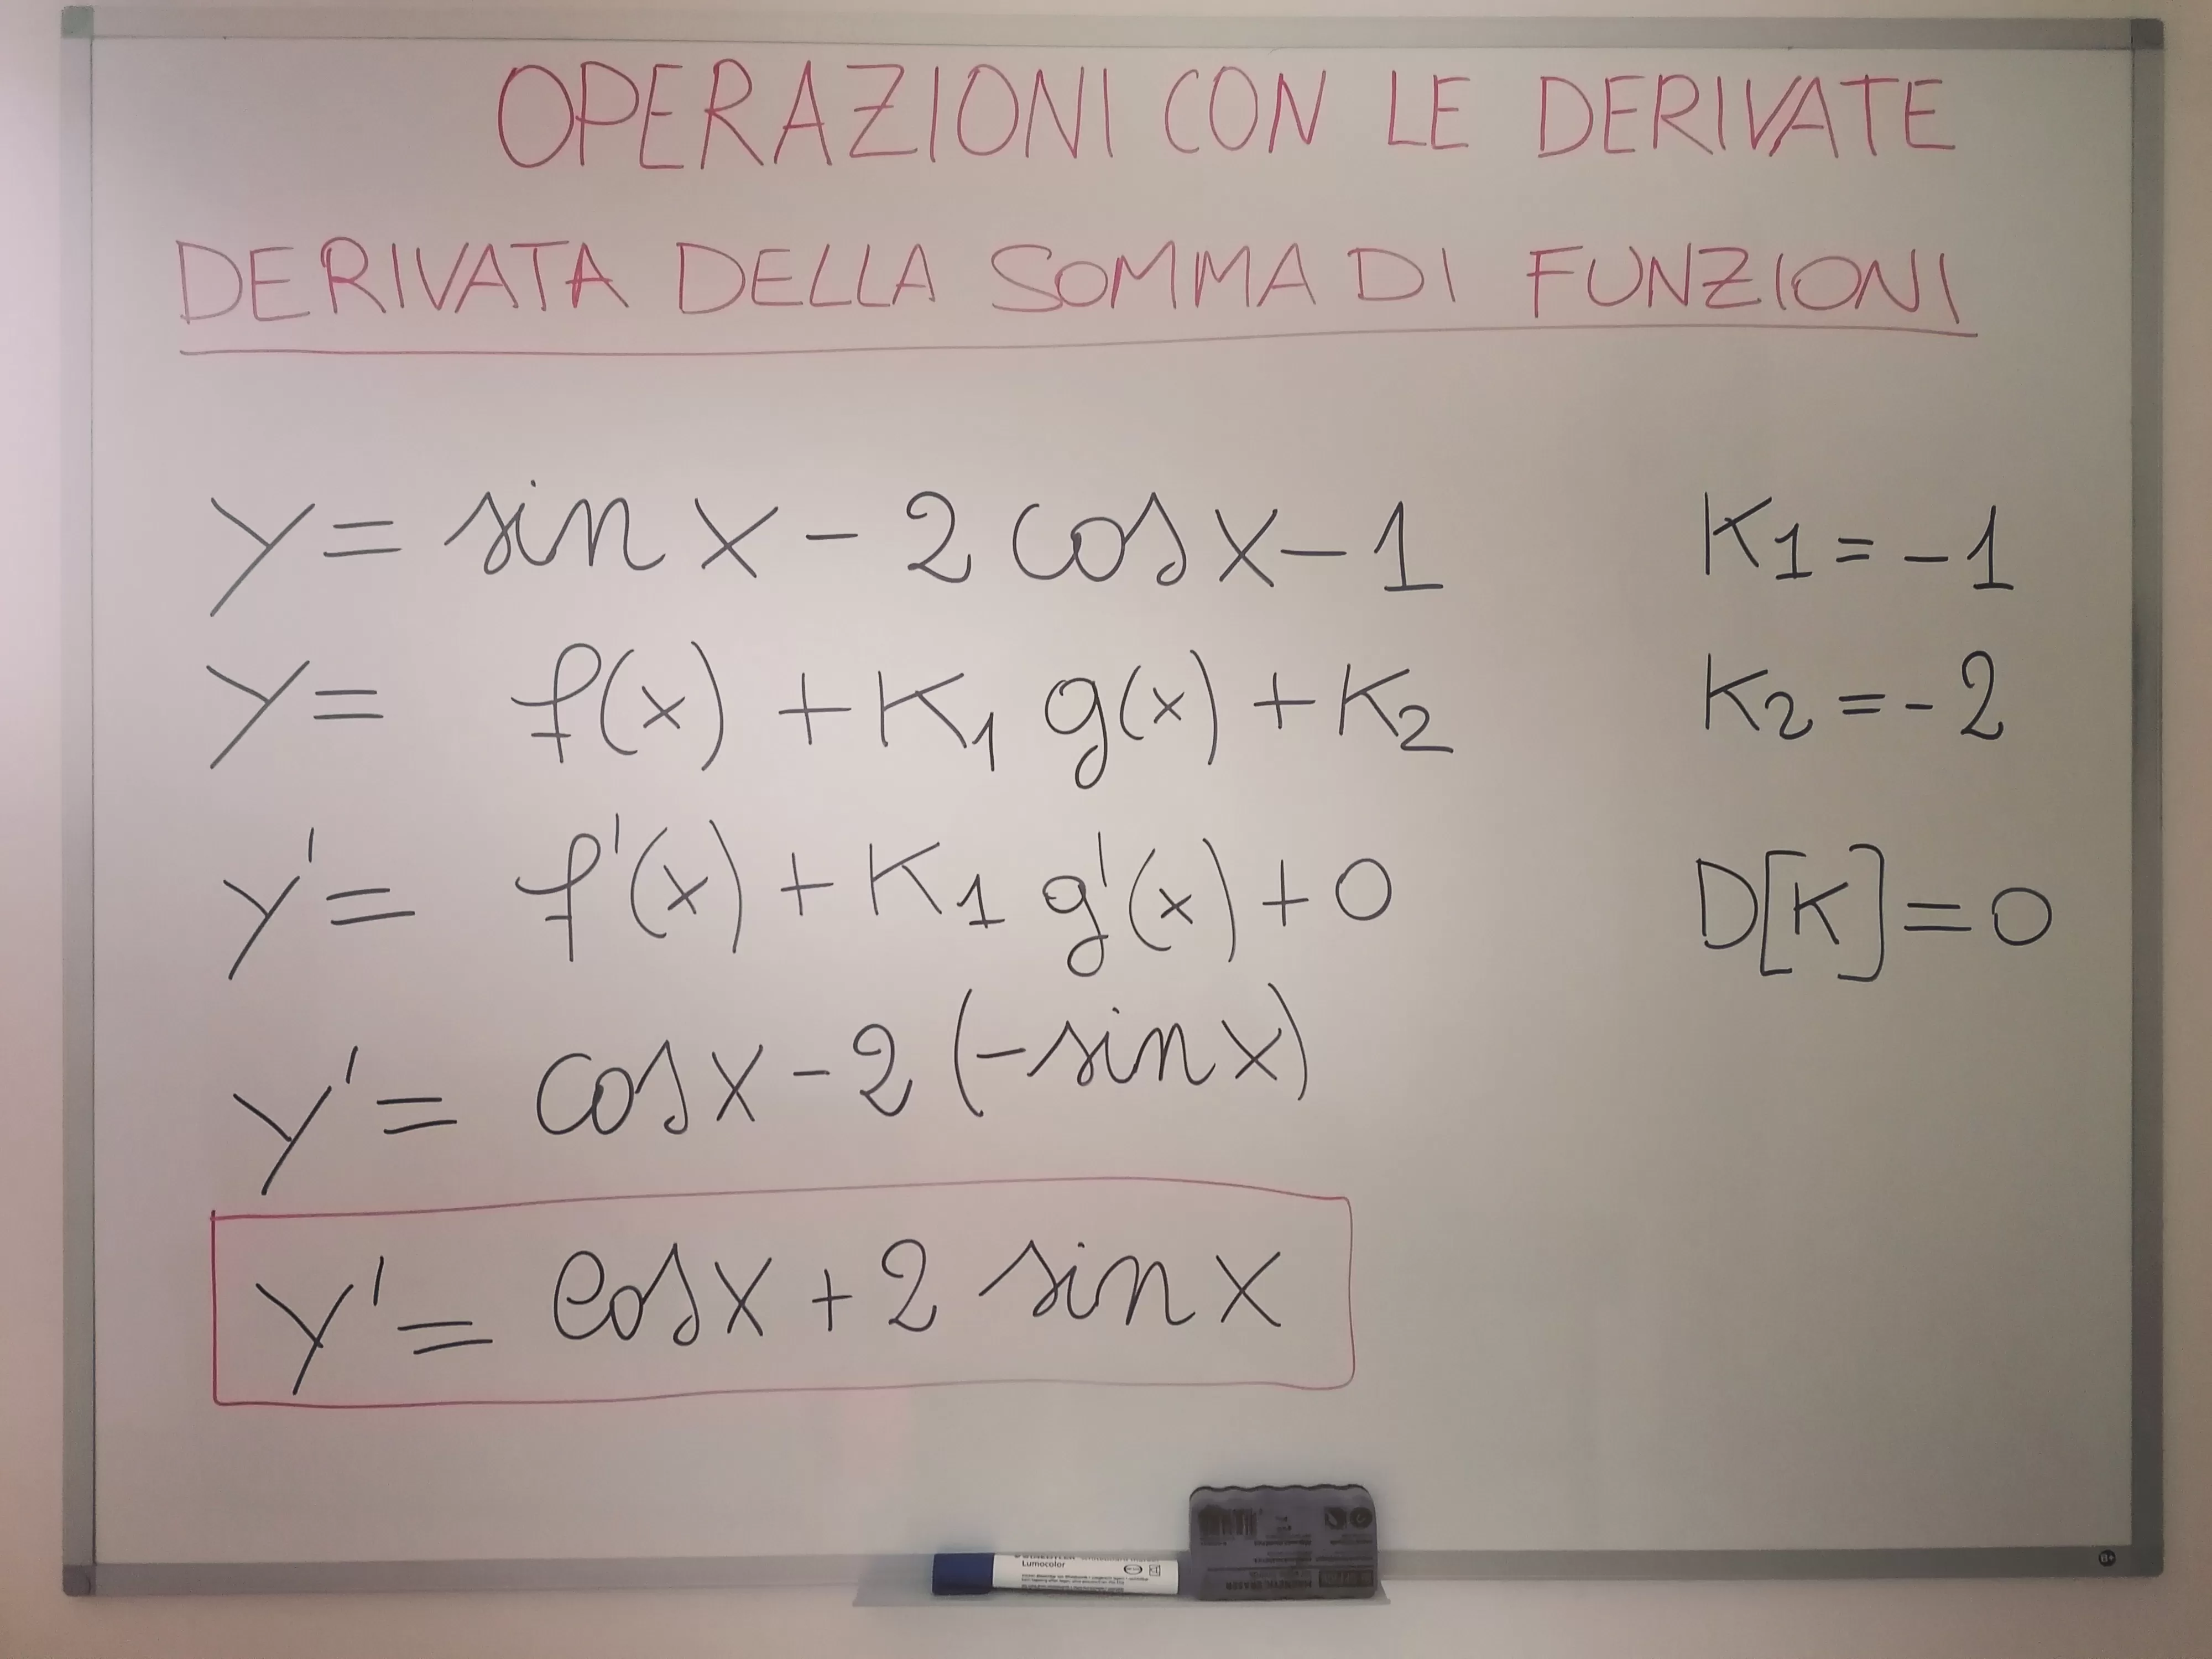 Calcola la derivata di y=sin(x) - 2 cos(x)-1